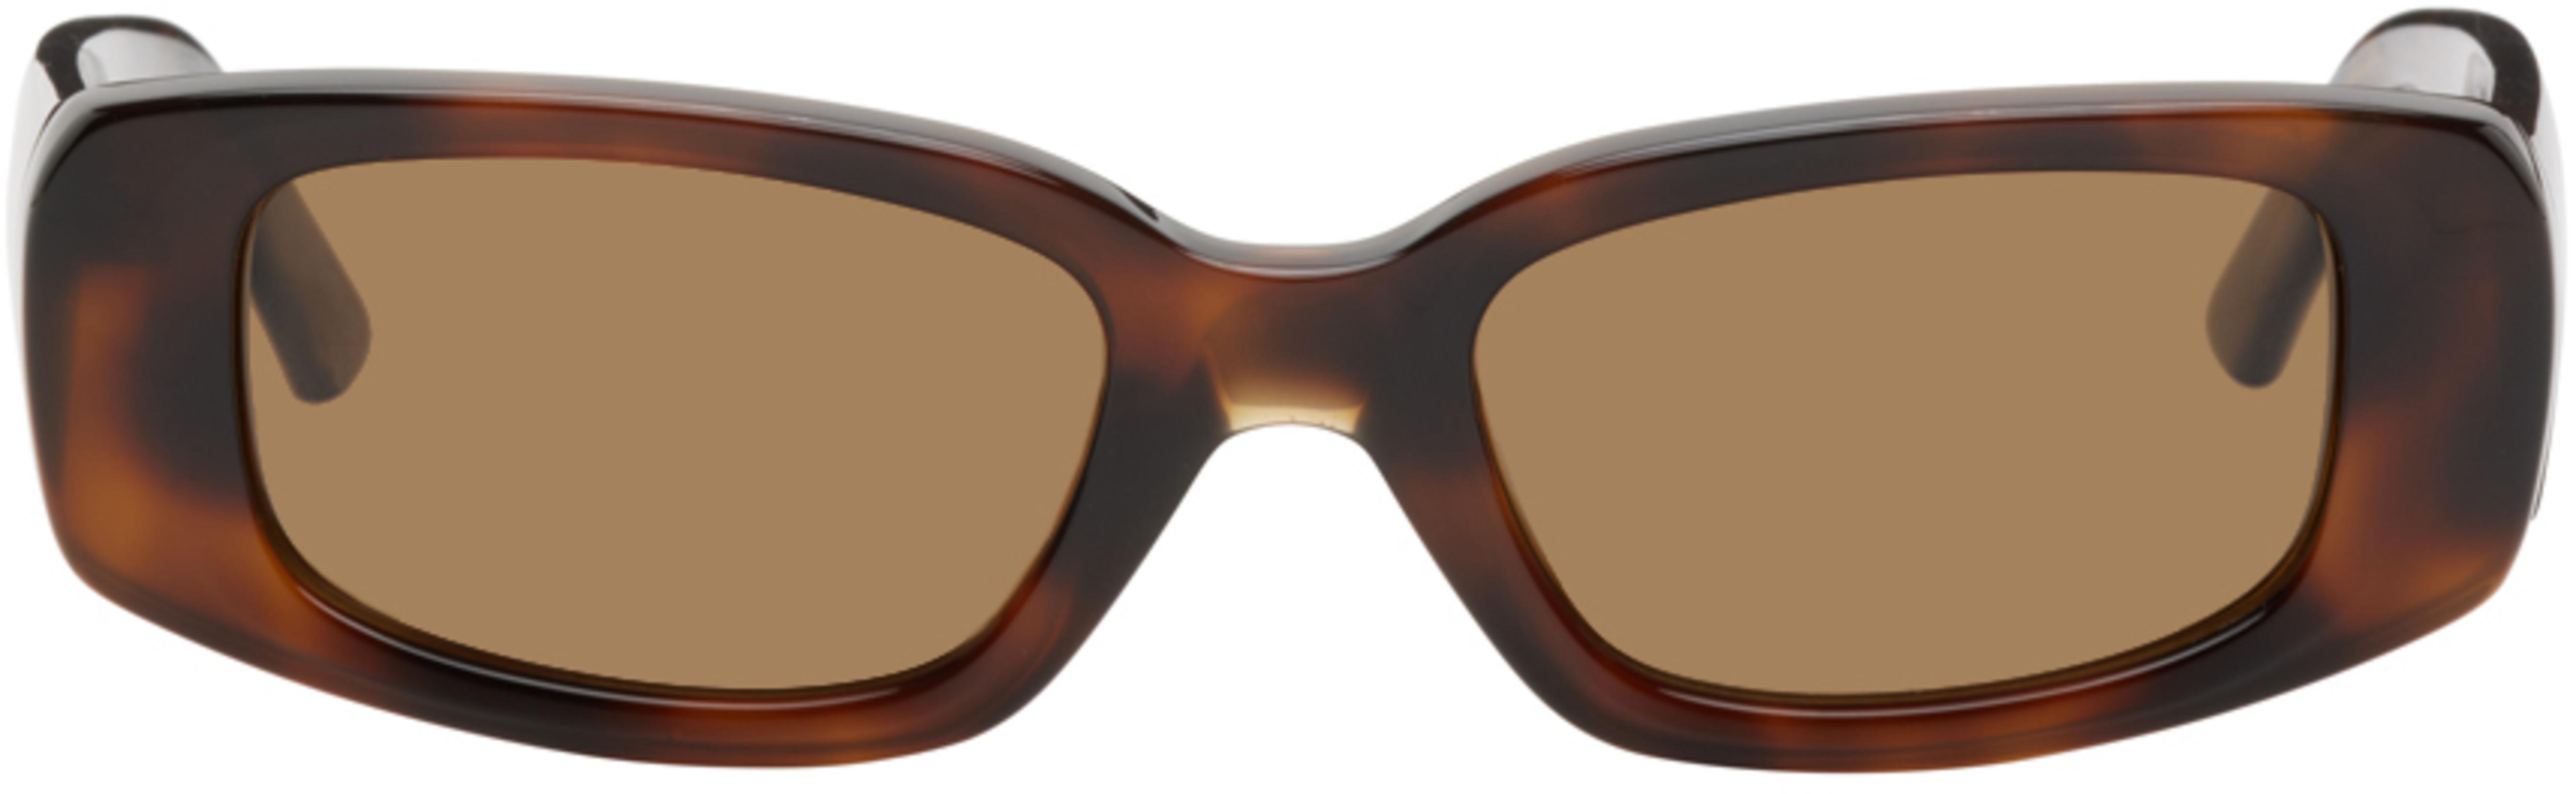 Tortoiseshell 10 Rectangular Sunglasses by CHIMI